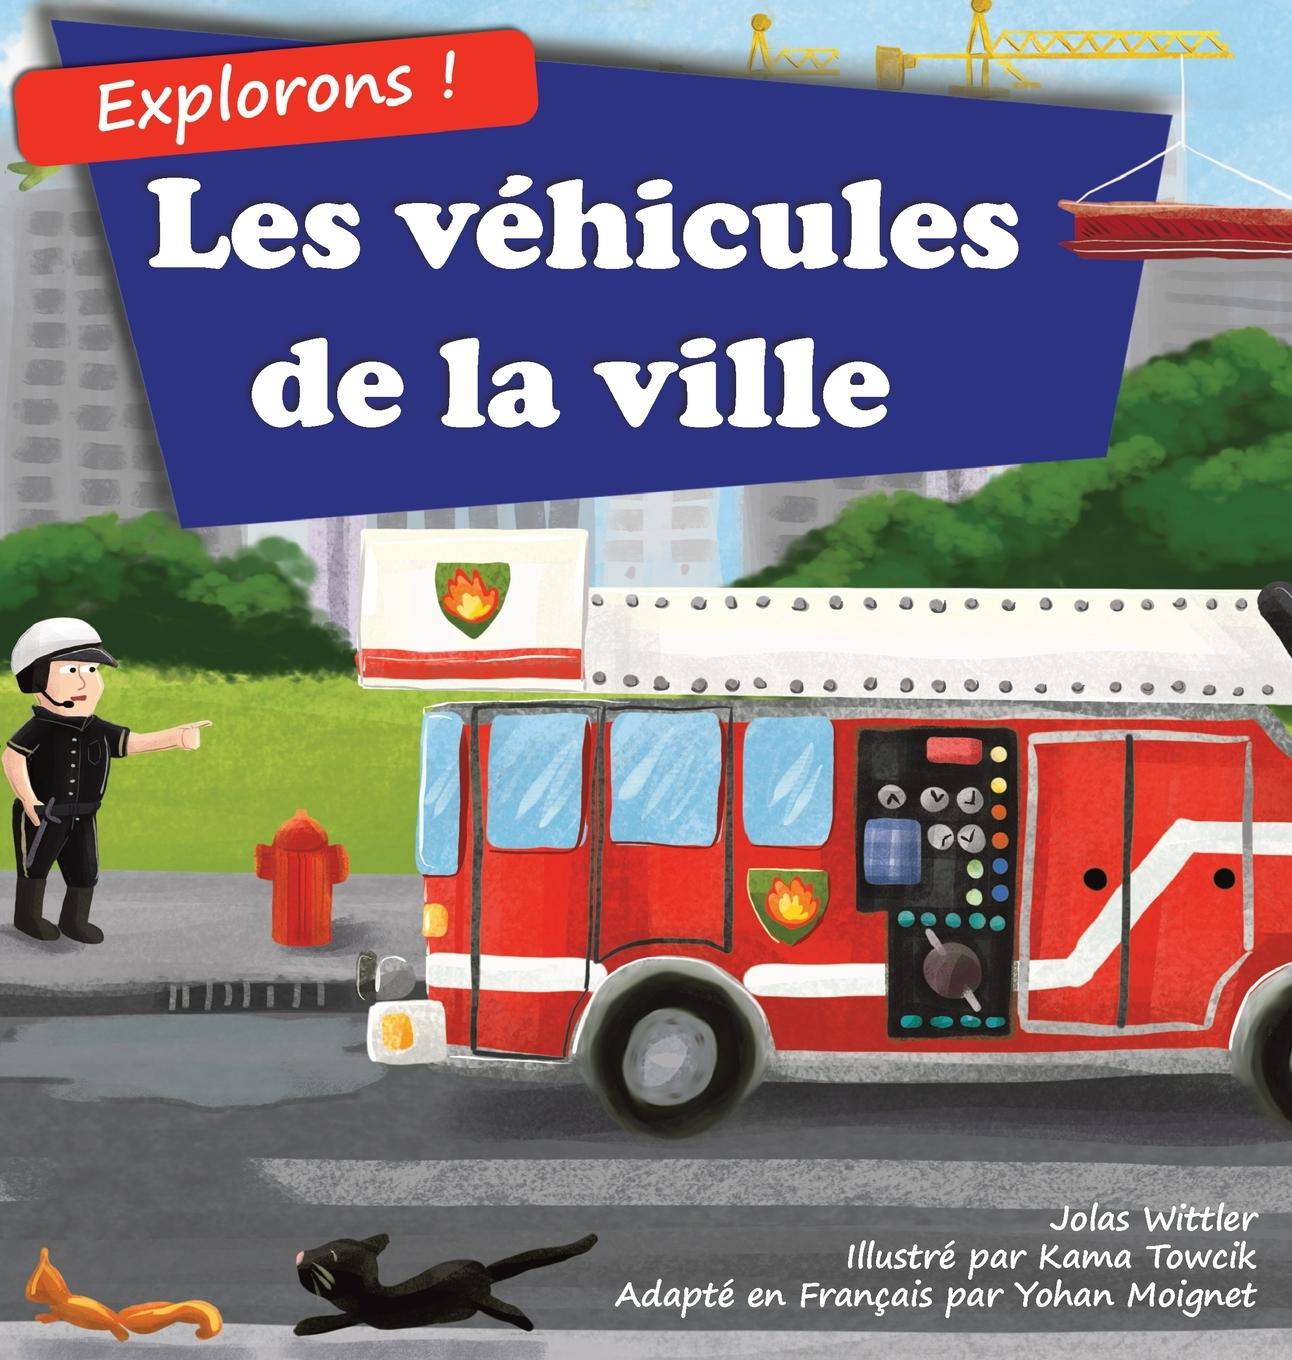 Kniha Explorons ! Les vehicules de la ville Jolas Wittler